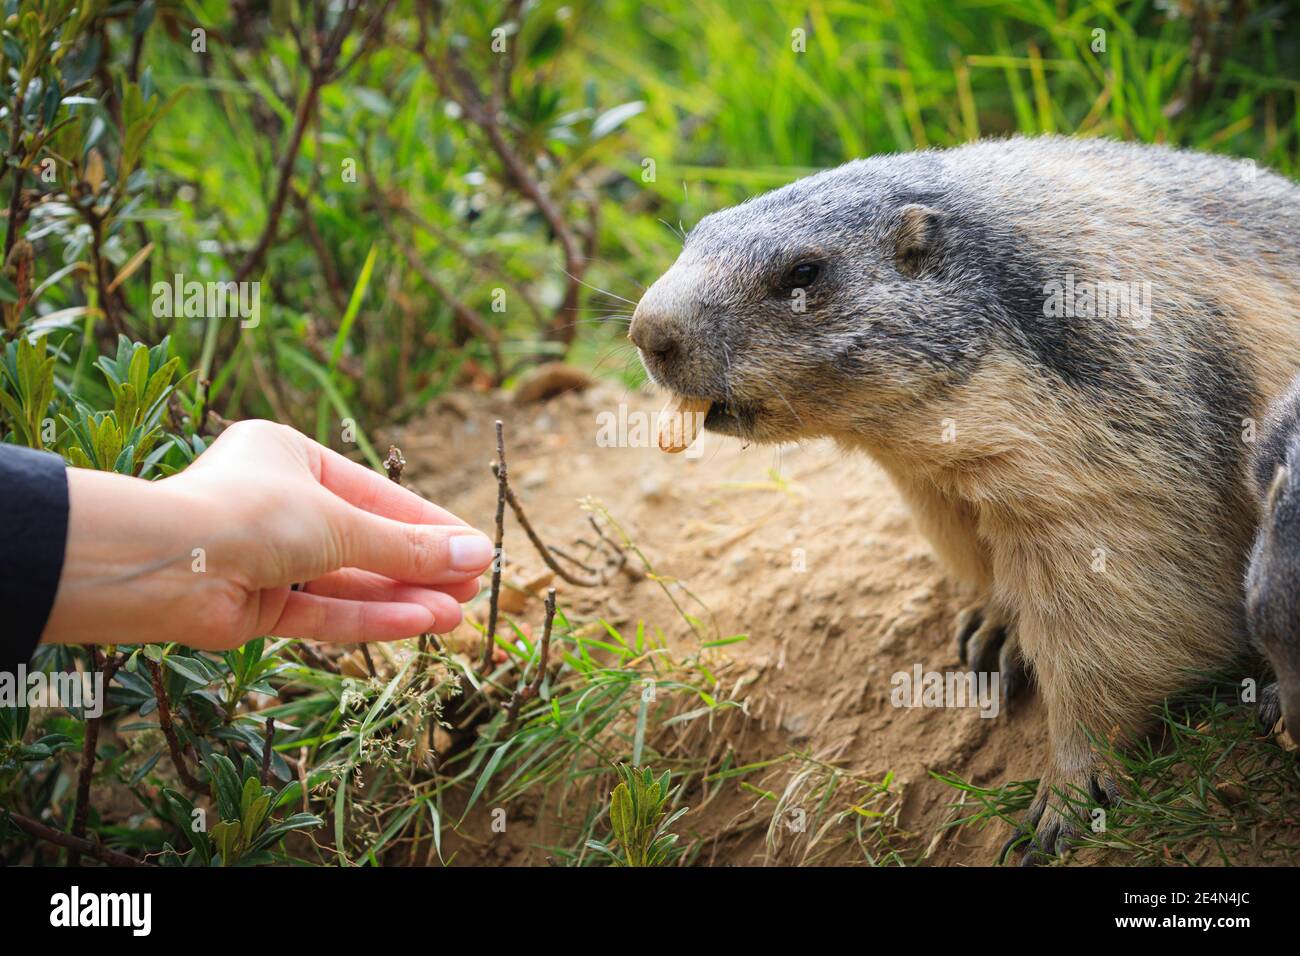 Marmot salvaje Marmota groundhog se alimenta en los alpes suizos Suiza animales vida salvaje tierra ardilla con mano humana mano, cacahuete macro detalle Foto de stock